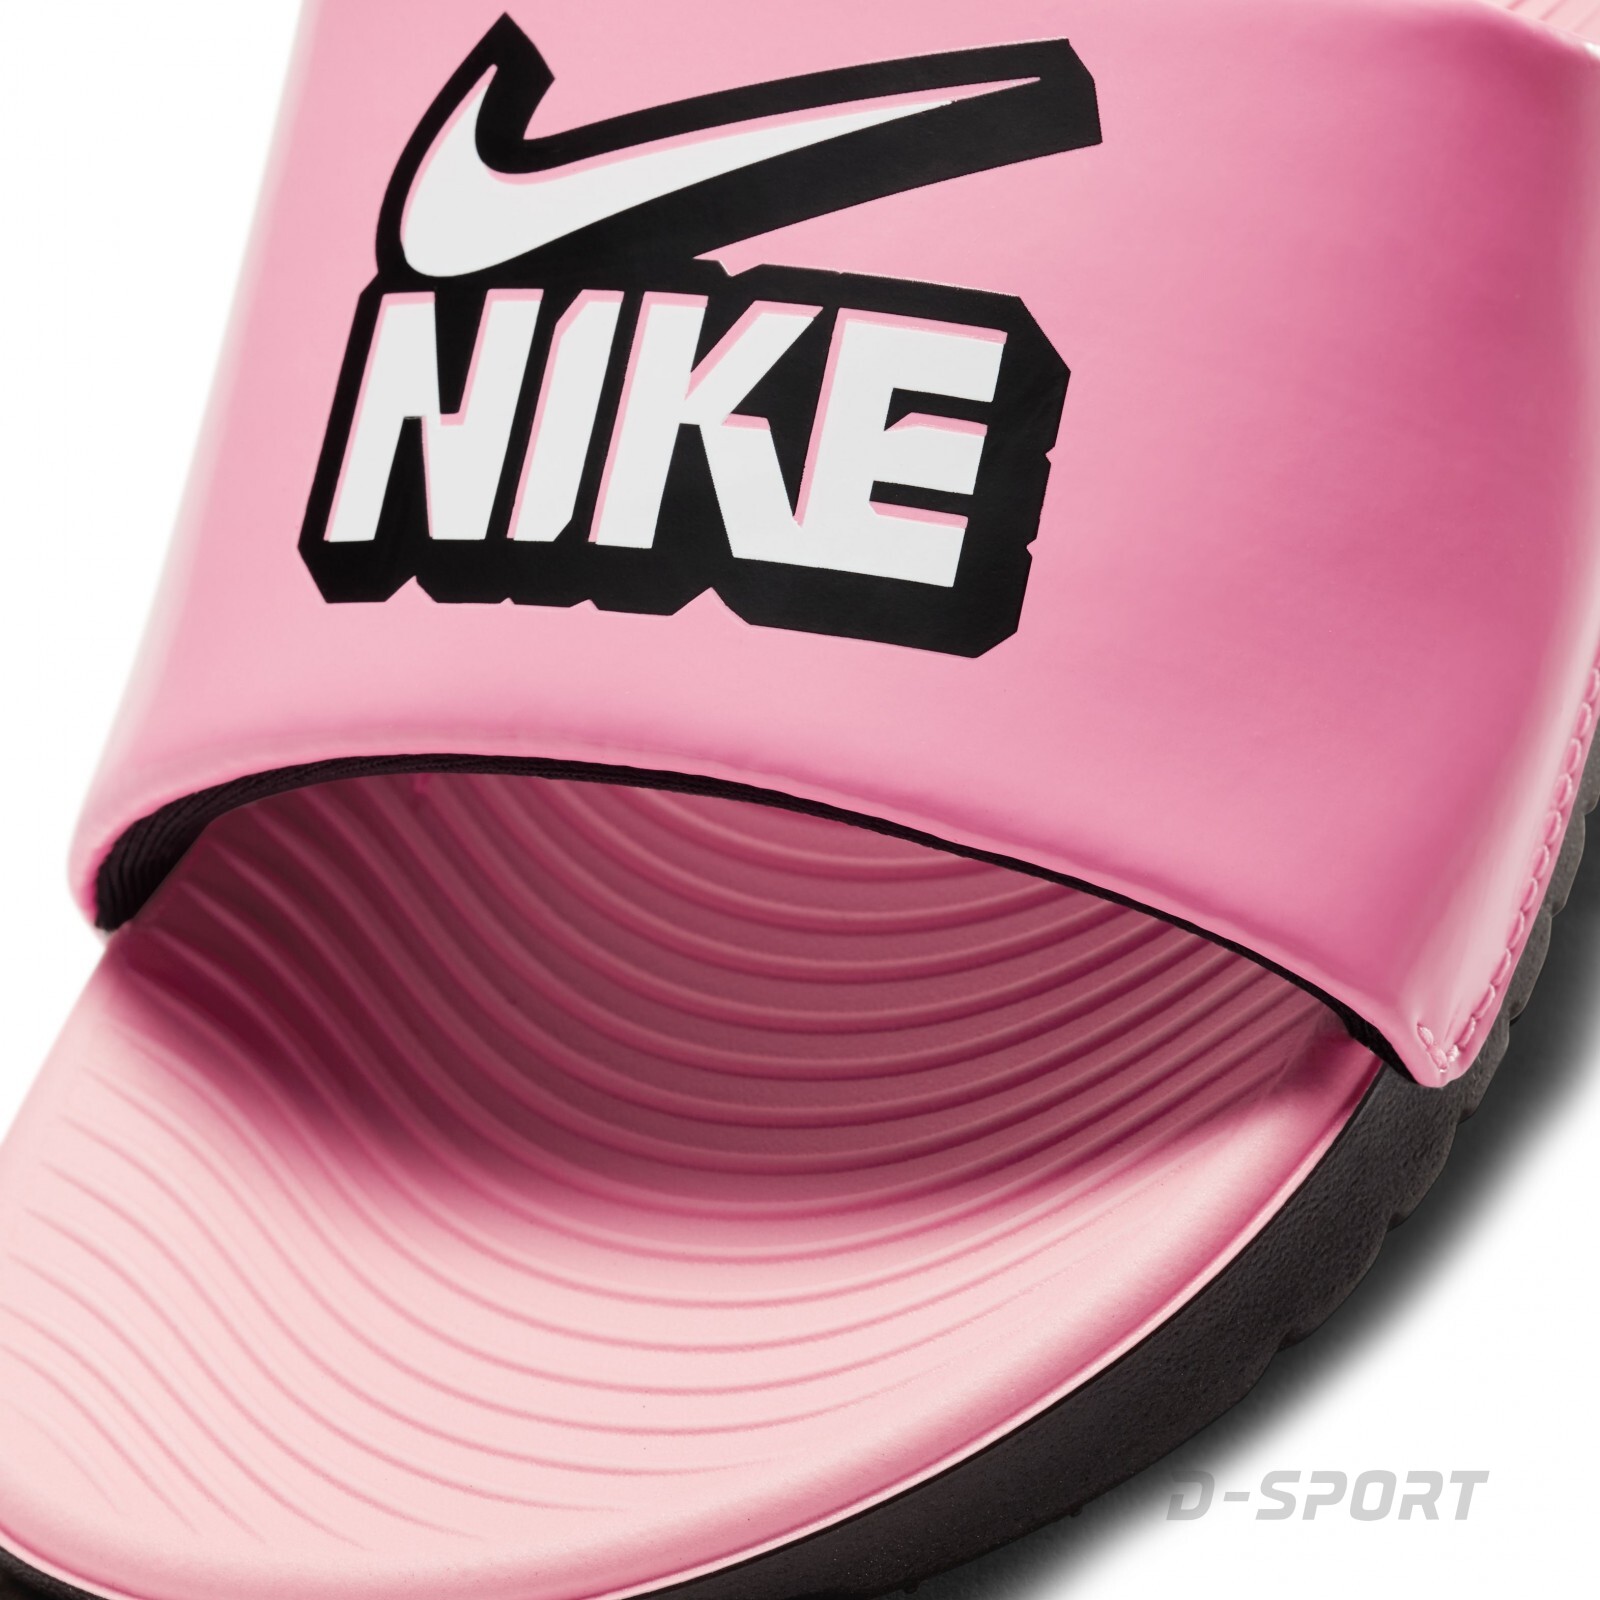 Nike Kawa